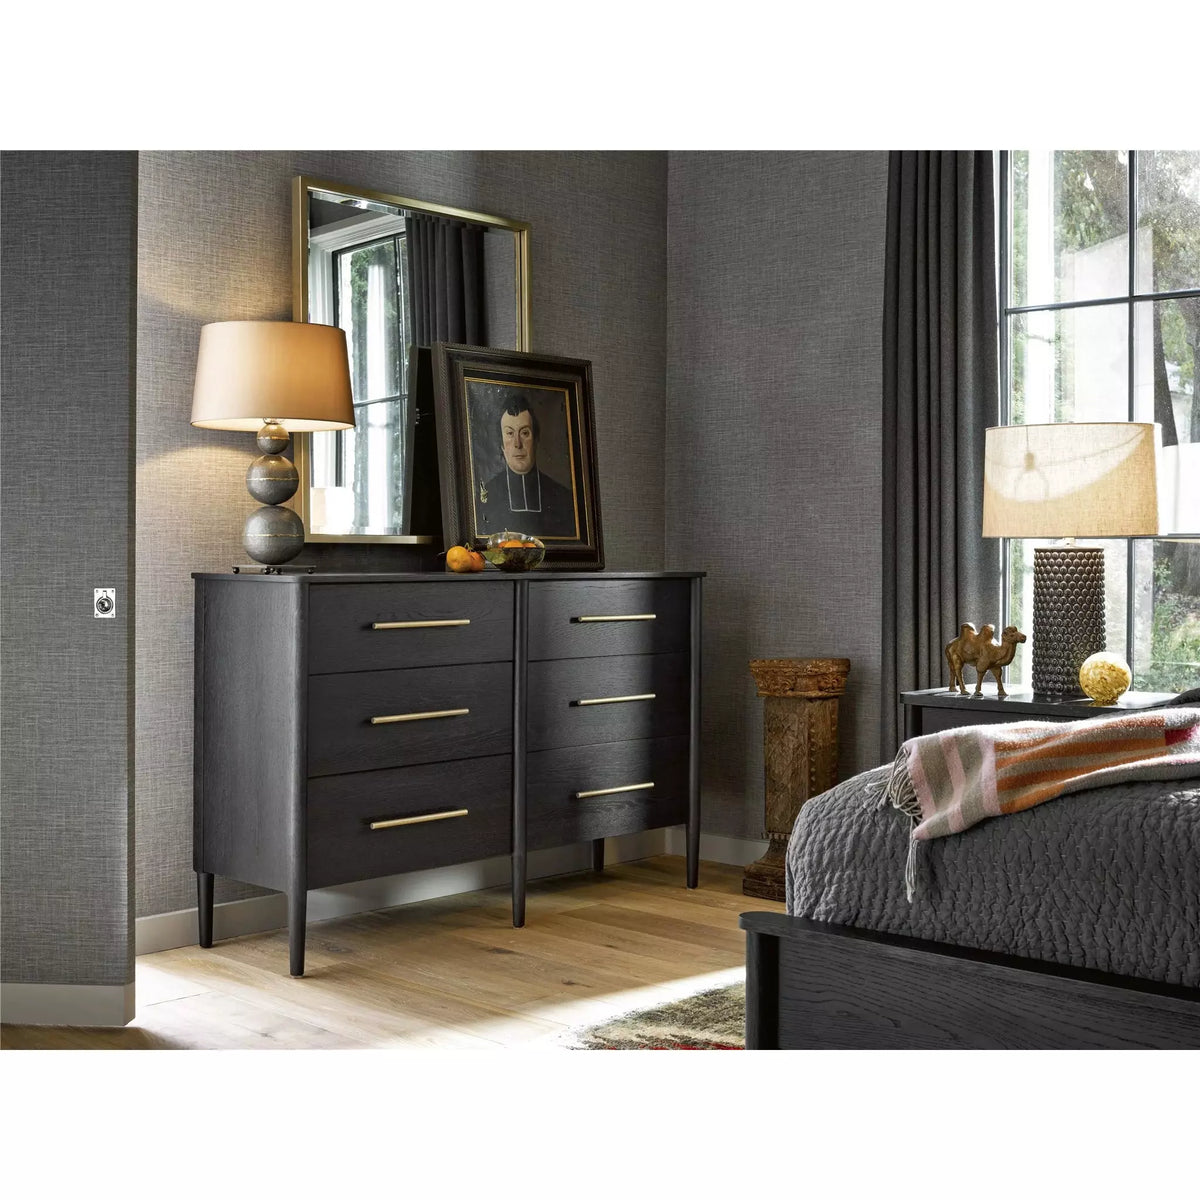 Langley Dresser - Be Bold Furniture